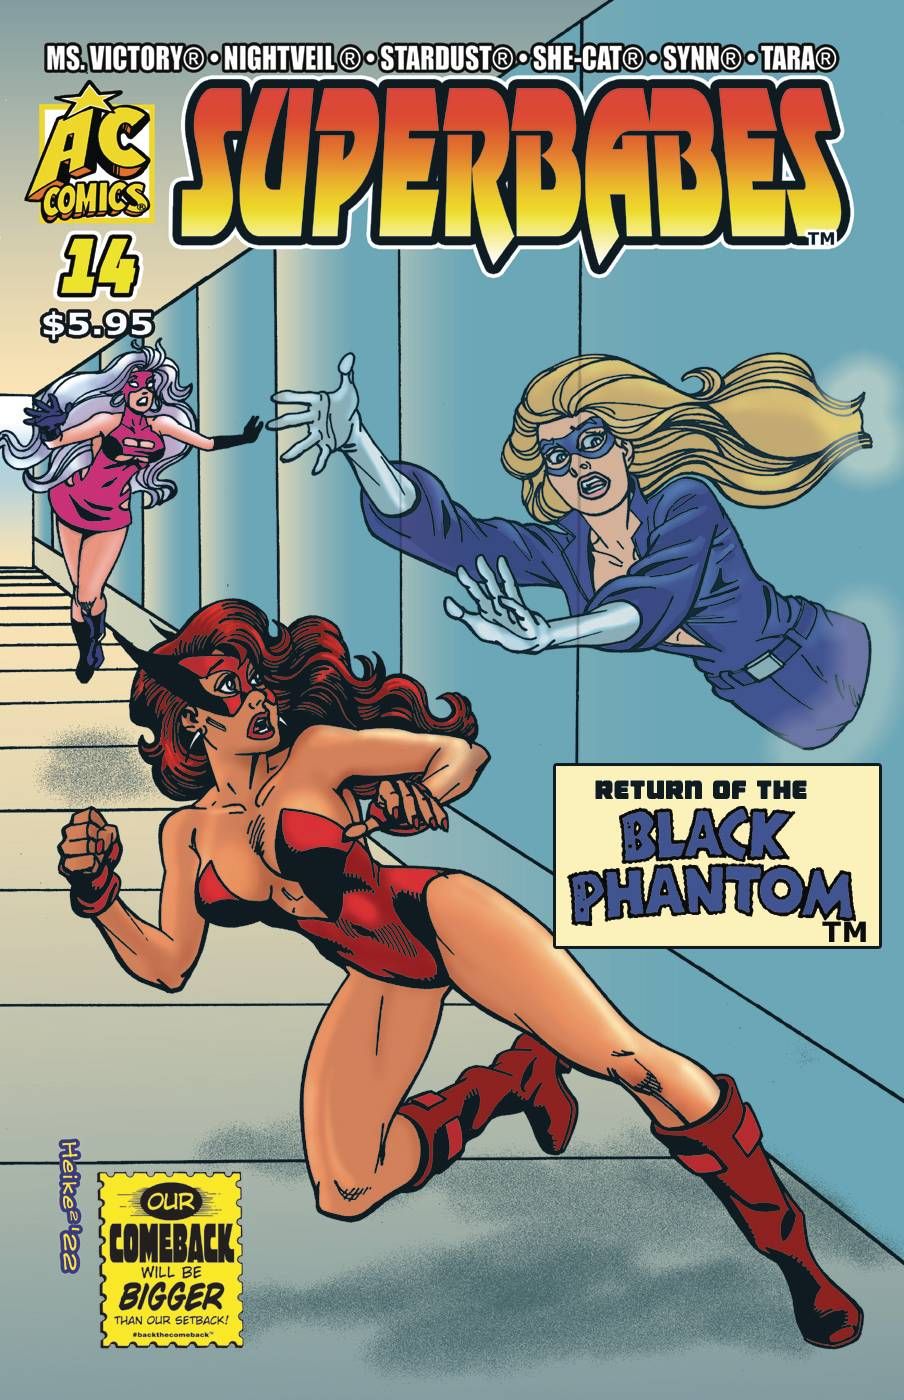 Superbabes Starring Femforce #14 Comic